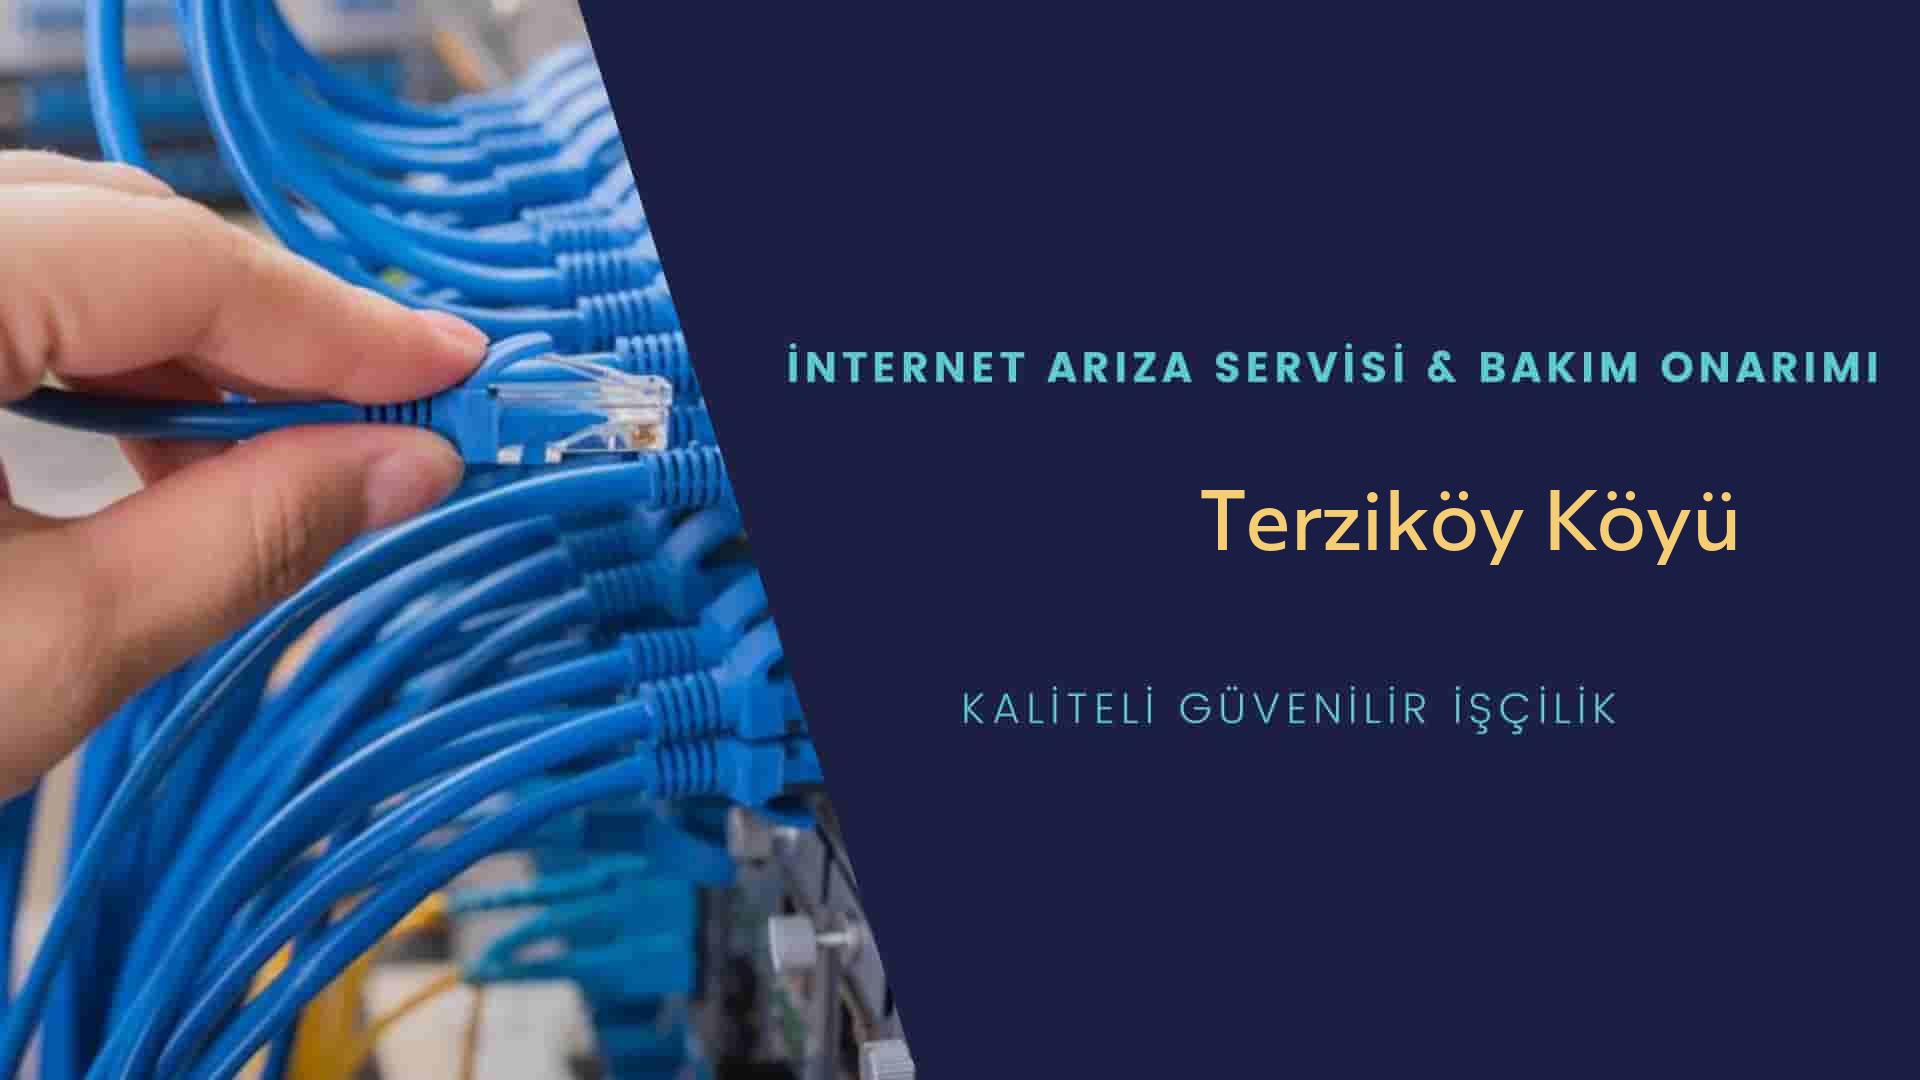 Terziköy Köyü internet kablosu çekimi yapan yerler veya elektrikçiler mi? arıyorsunuz doğru yerdesiniz o zaman sizlere 7/24 yardımcı olacak profesyonel ustalarımız bir telefon kadar yakındır size.